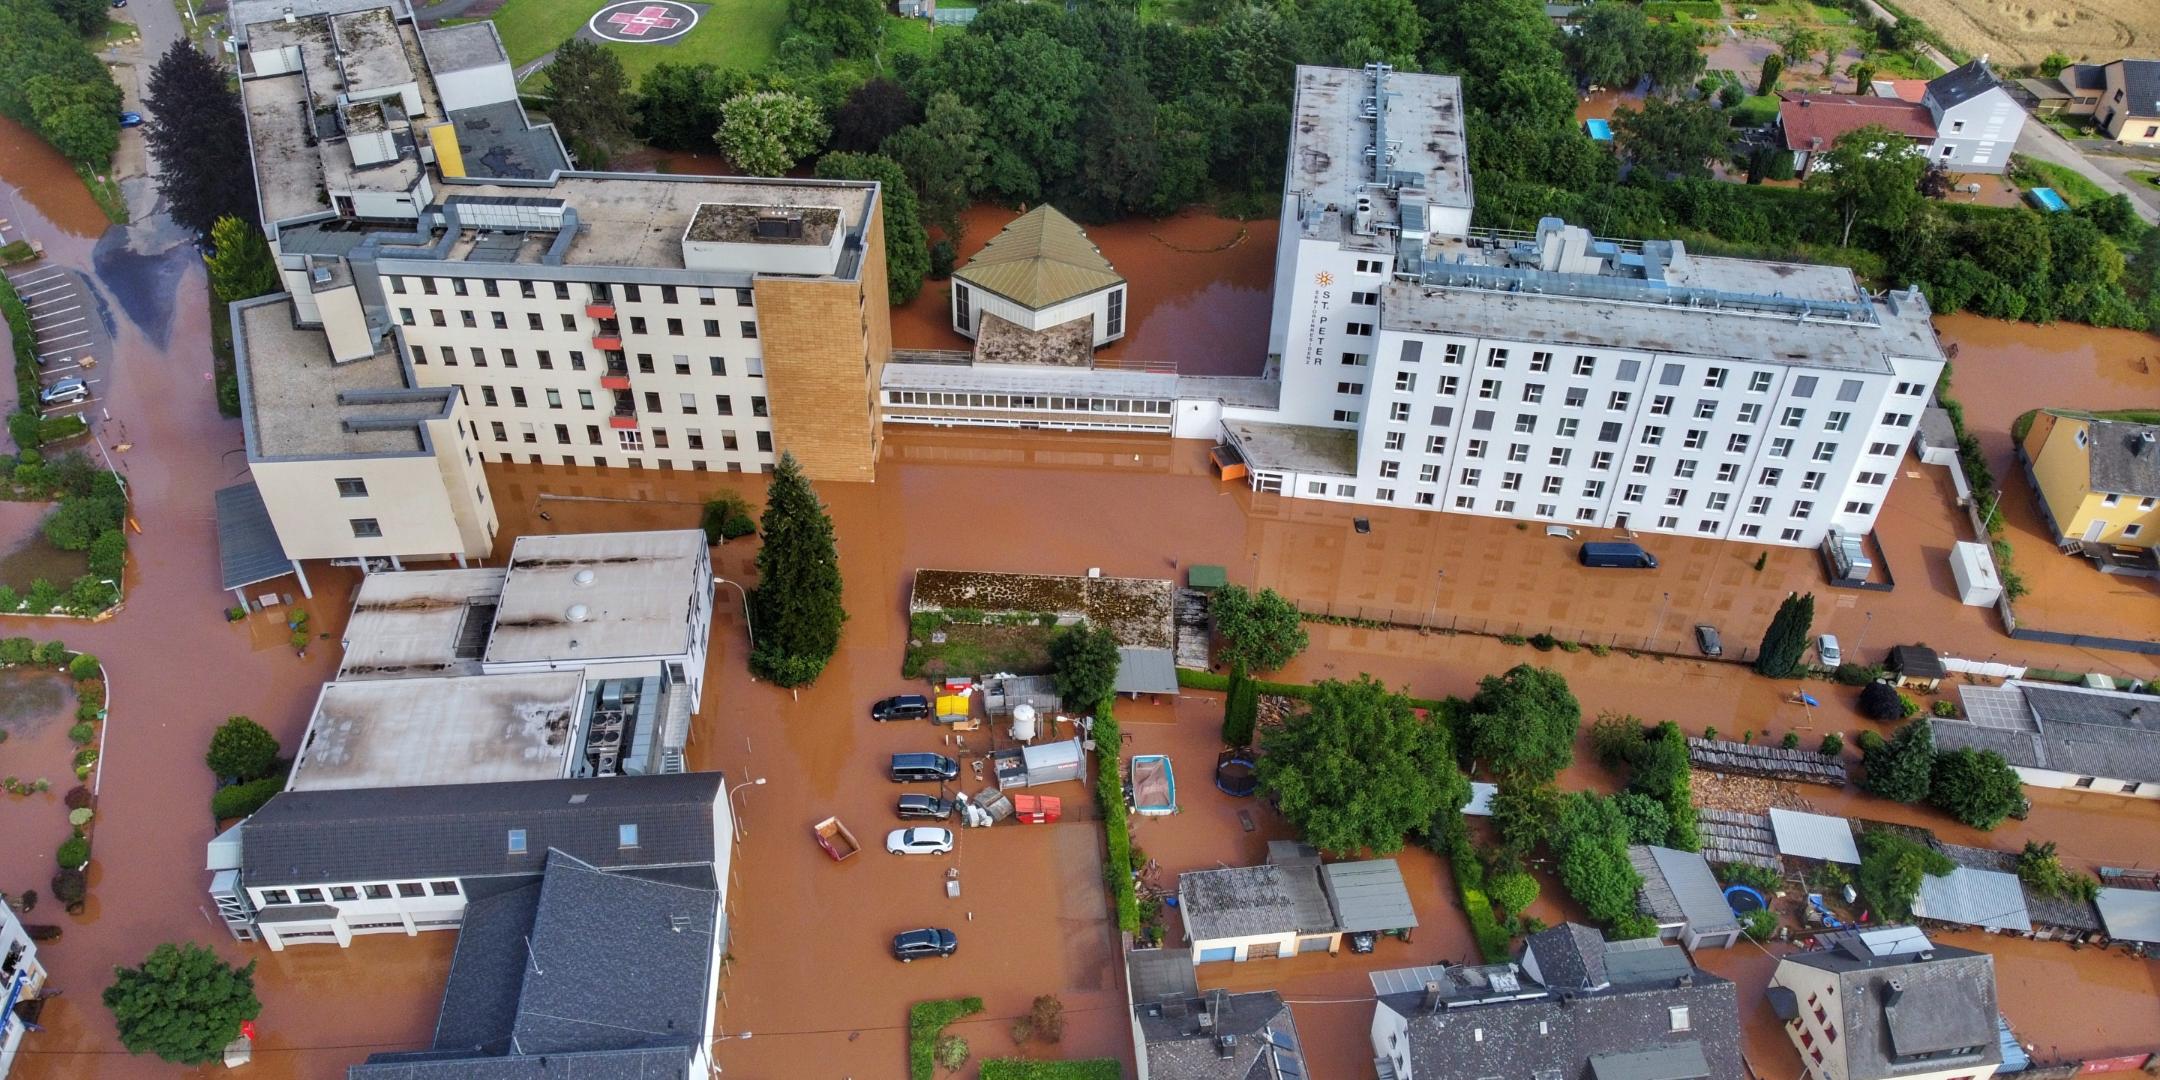 Die verheerende Flutkatastrophe hat viele Menschen in Rheinland-Pfalz schwer getroffen - hier der Stadtteil Trier-Ehrang (Foto: Florian Blaes)